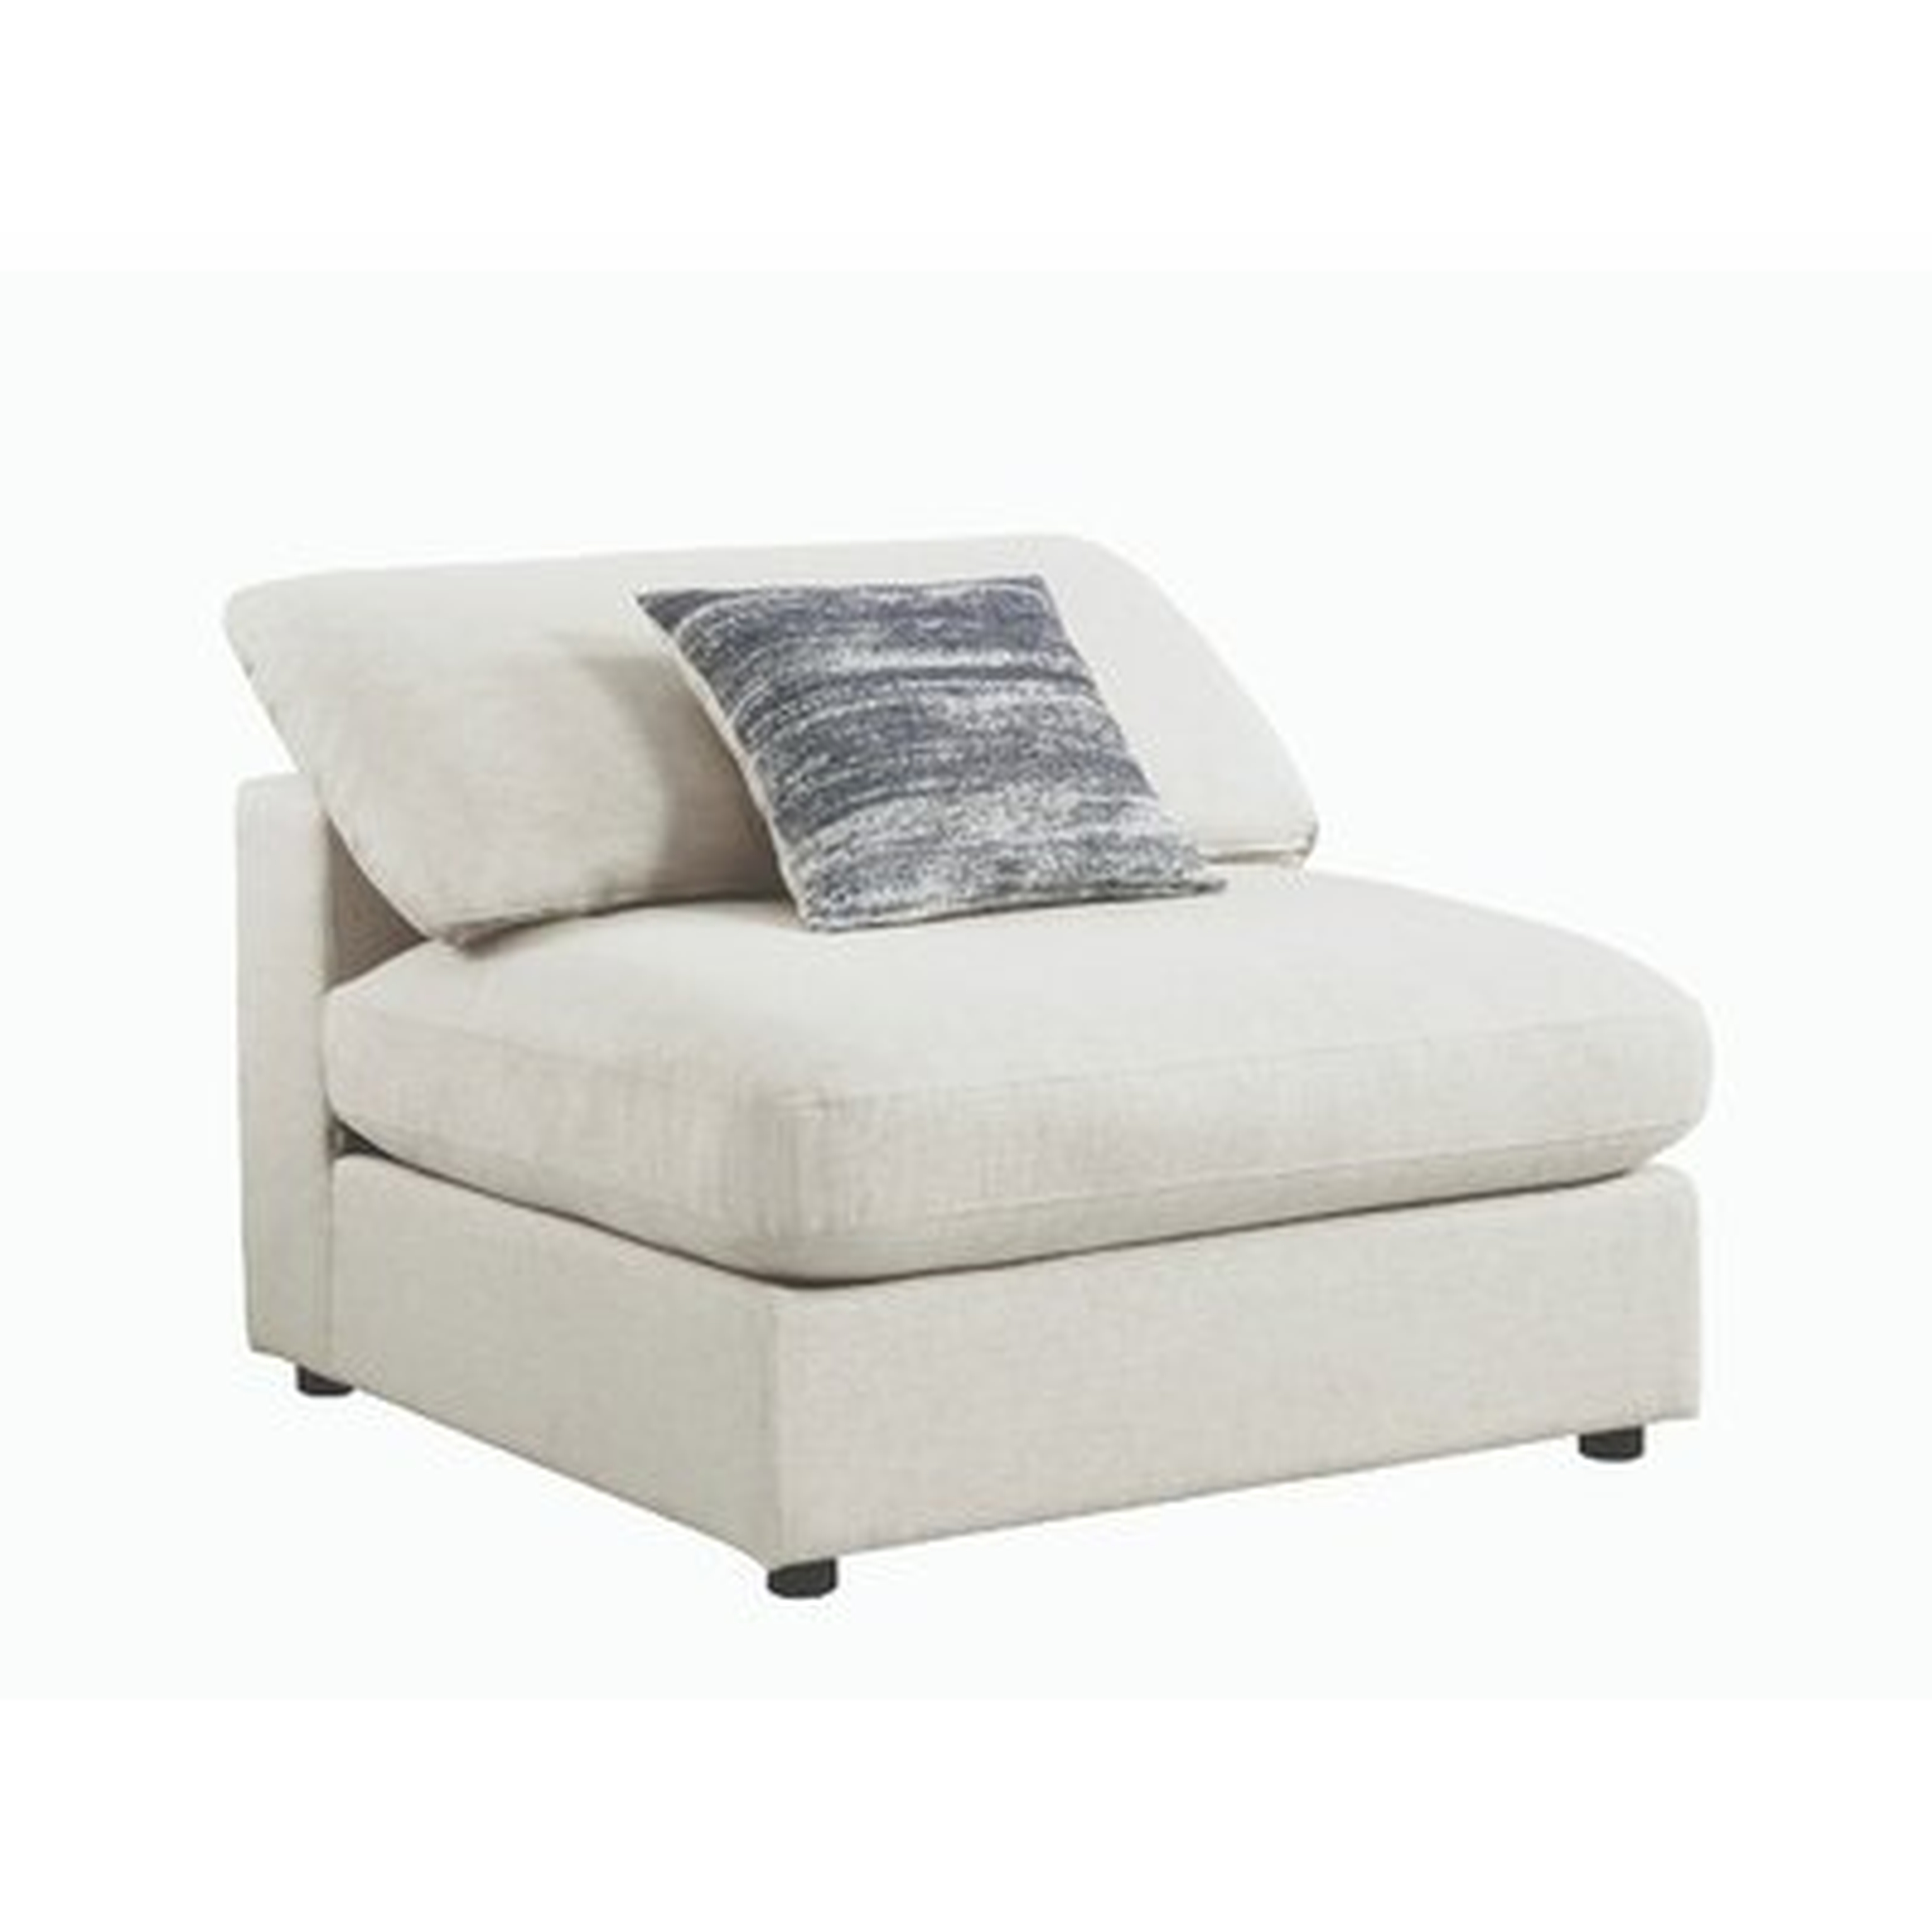 Rinker Fabric Upholstered Wooden Armless Slipper Chair - AllModern